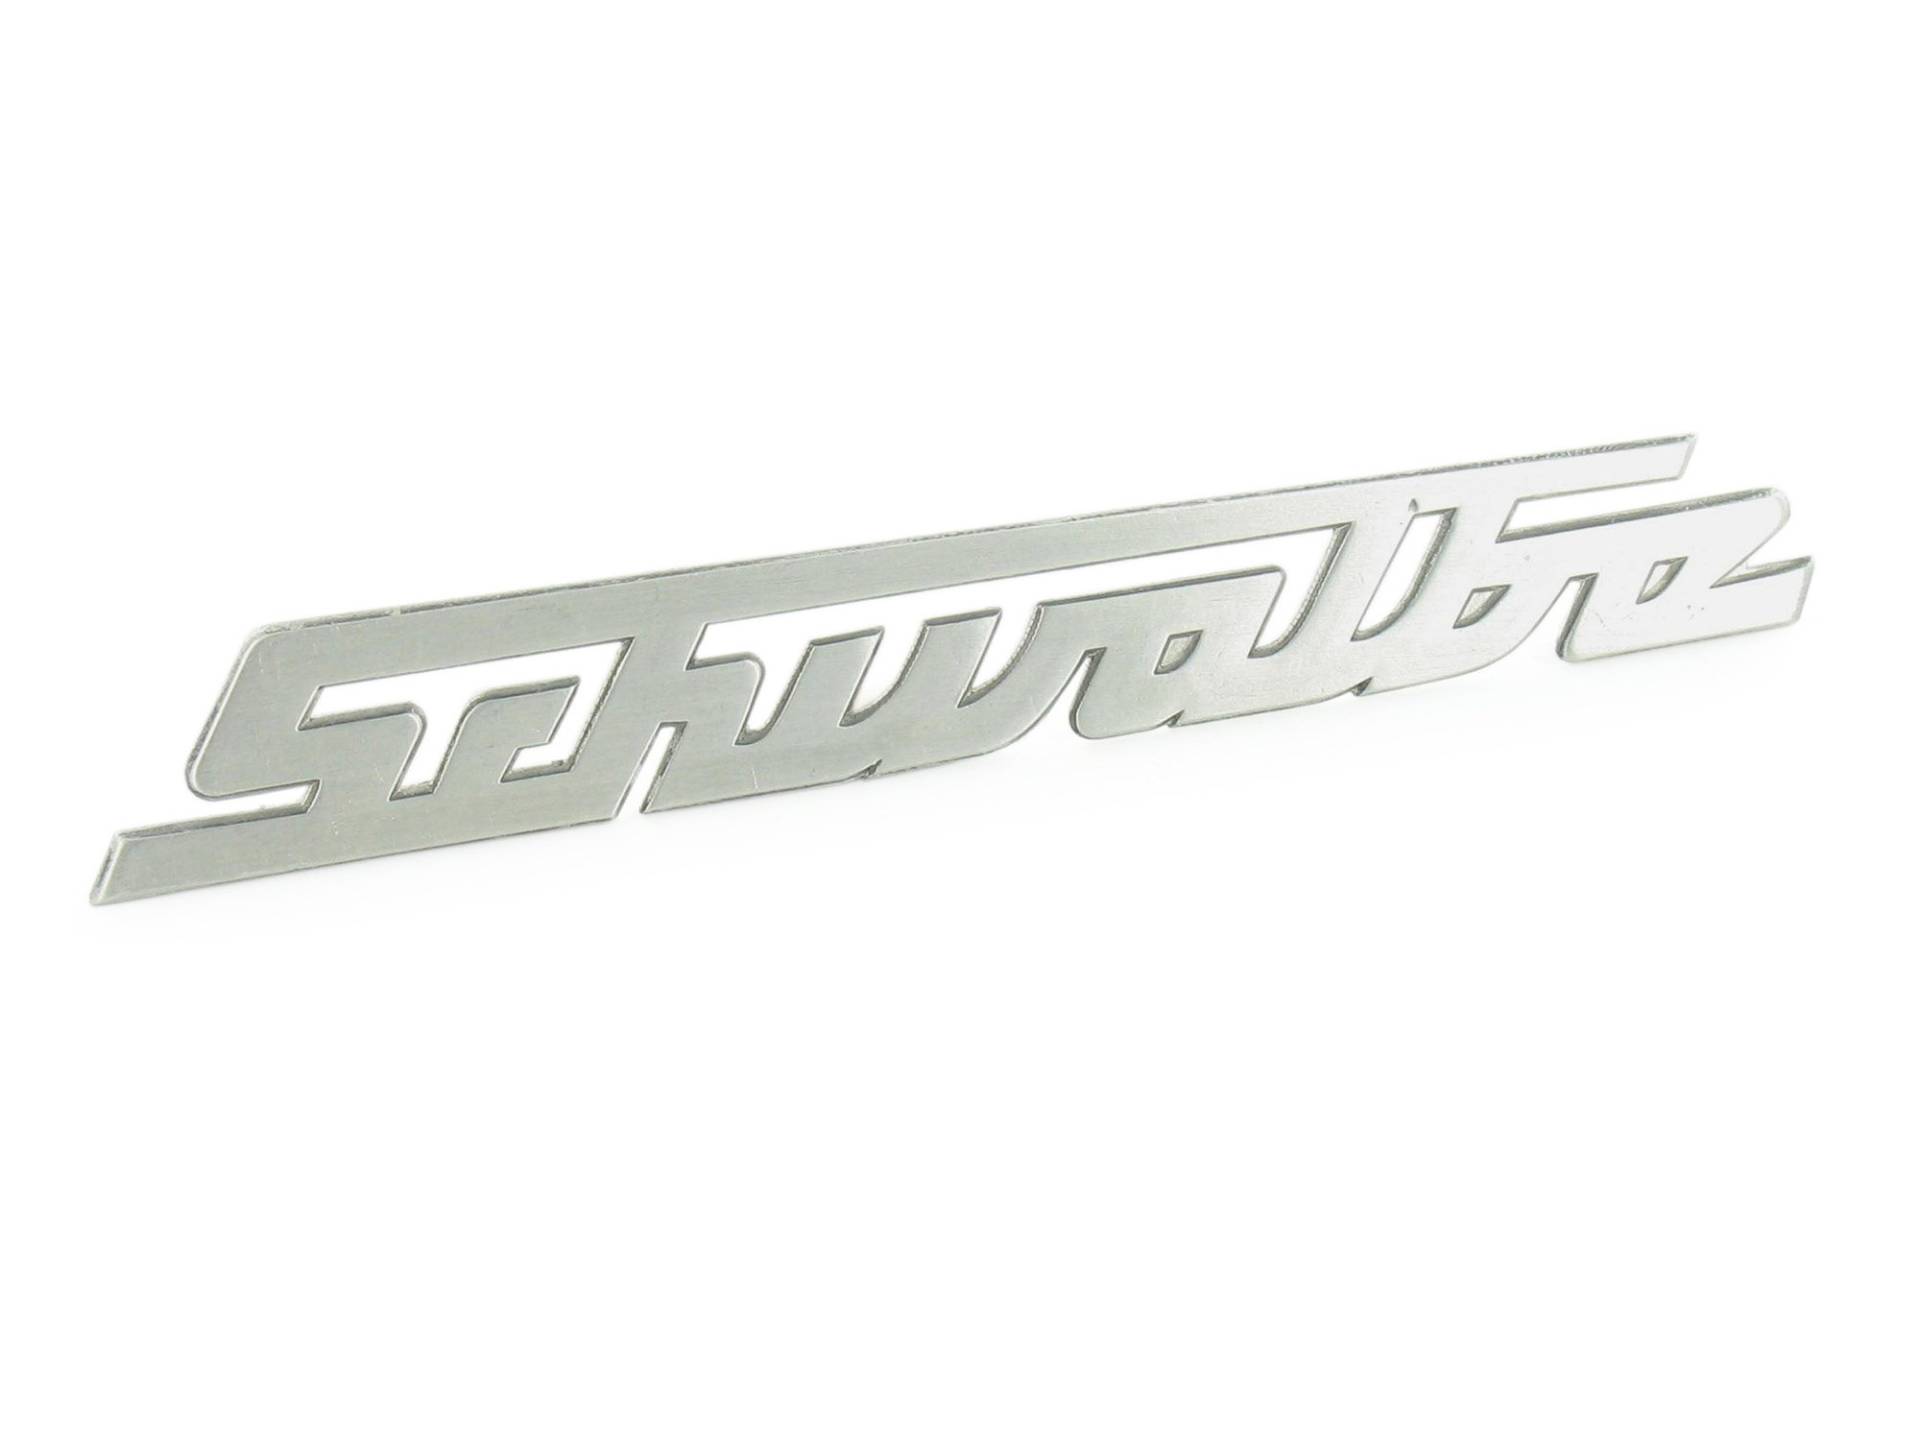 Schriftzug - Schwalbe - Aluminium, silber, gerade (nicht gebogen) für Knieschutzblech (Beinblech) - KR51 von MZA Meyer-Zweiradtechnik GmbH